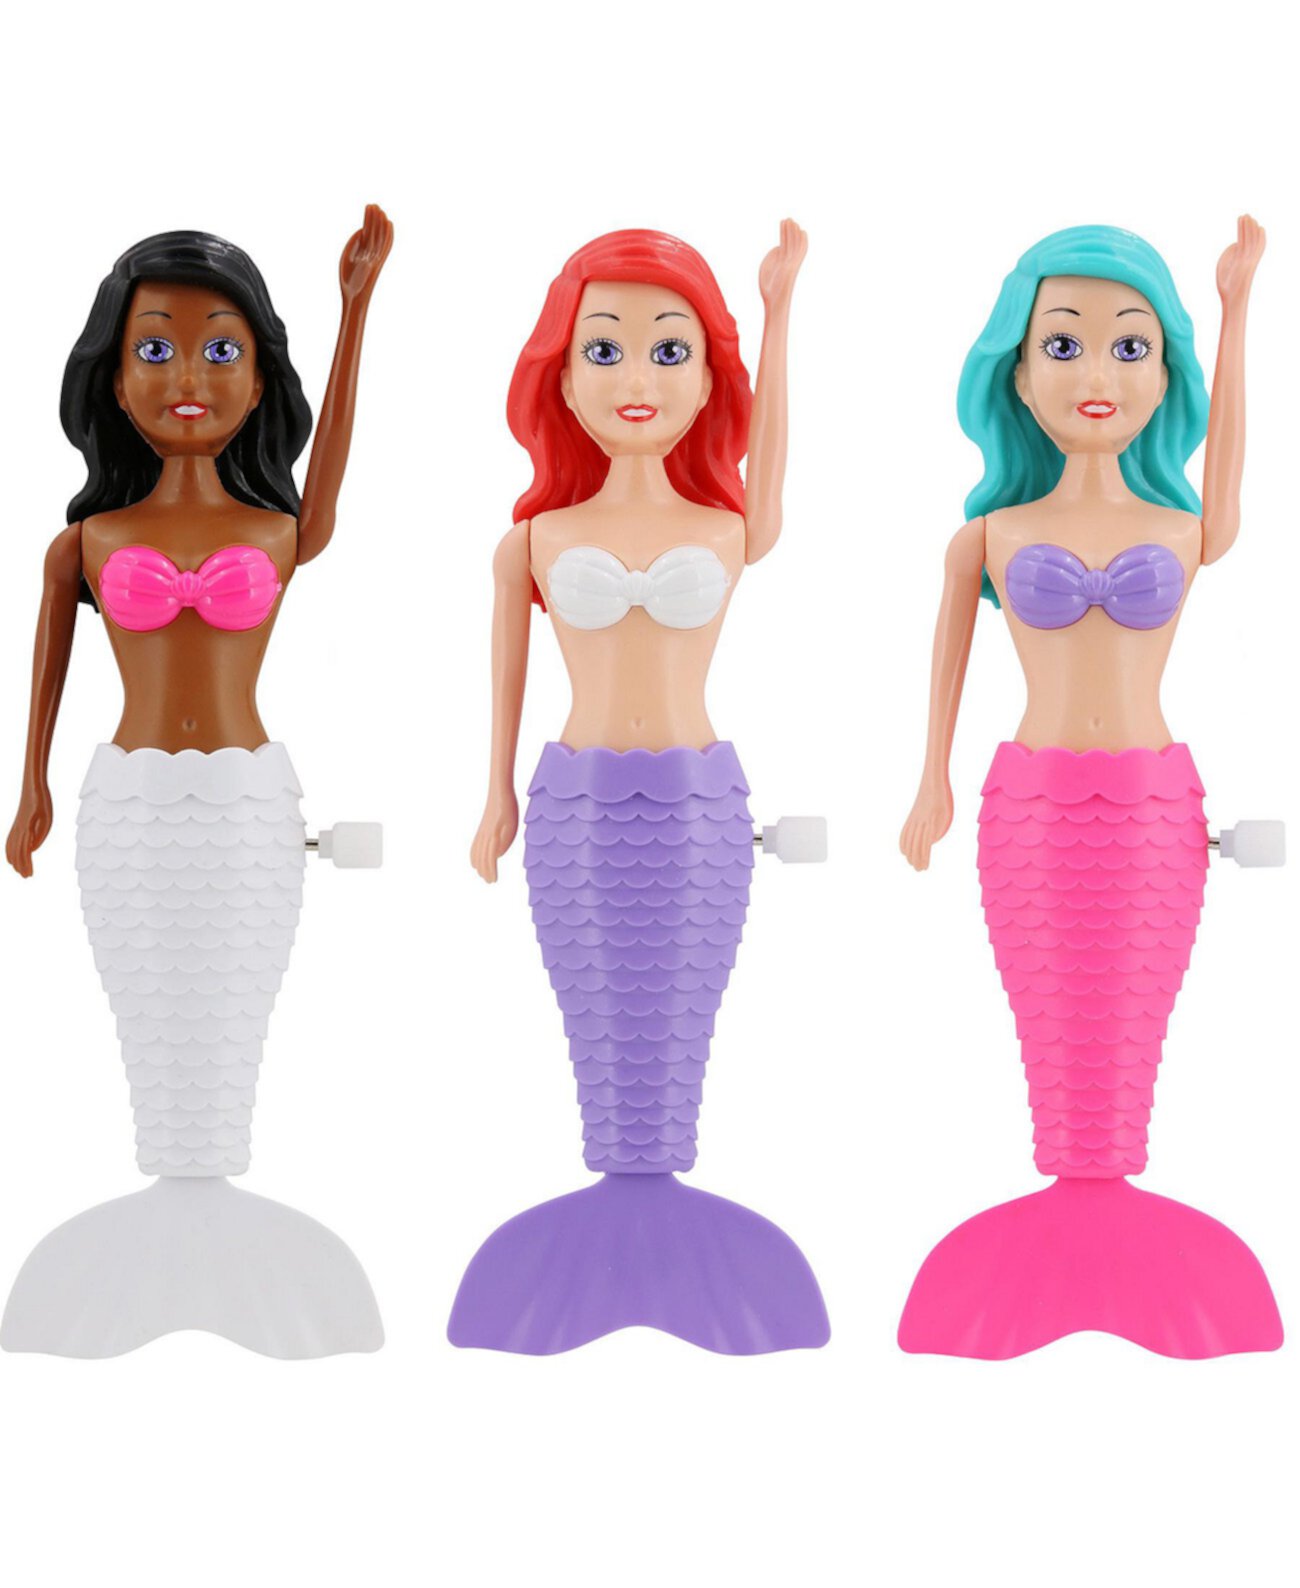 Набор игрушек для погружения в водном бассейне Splash 'N Go Mermaid, 3 предмета Banzai